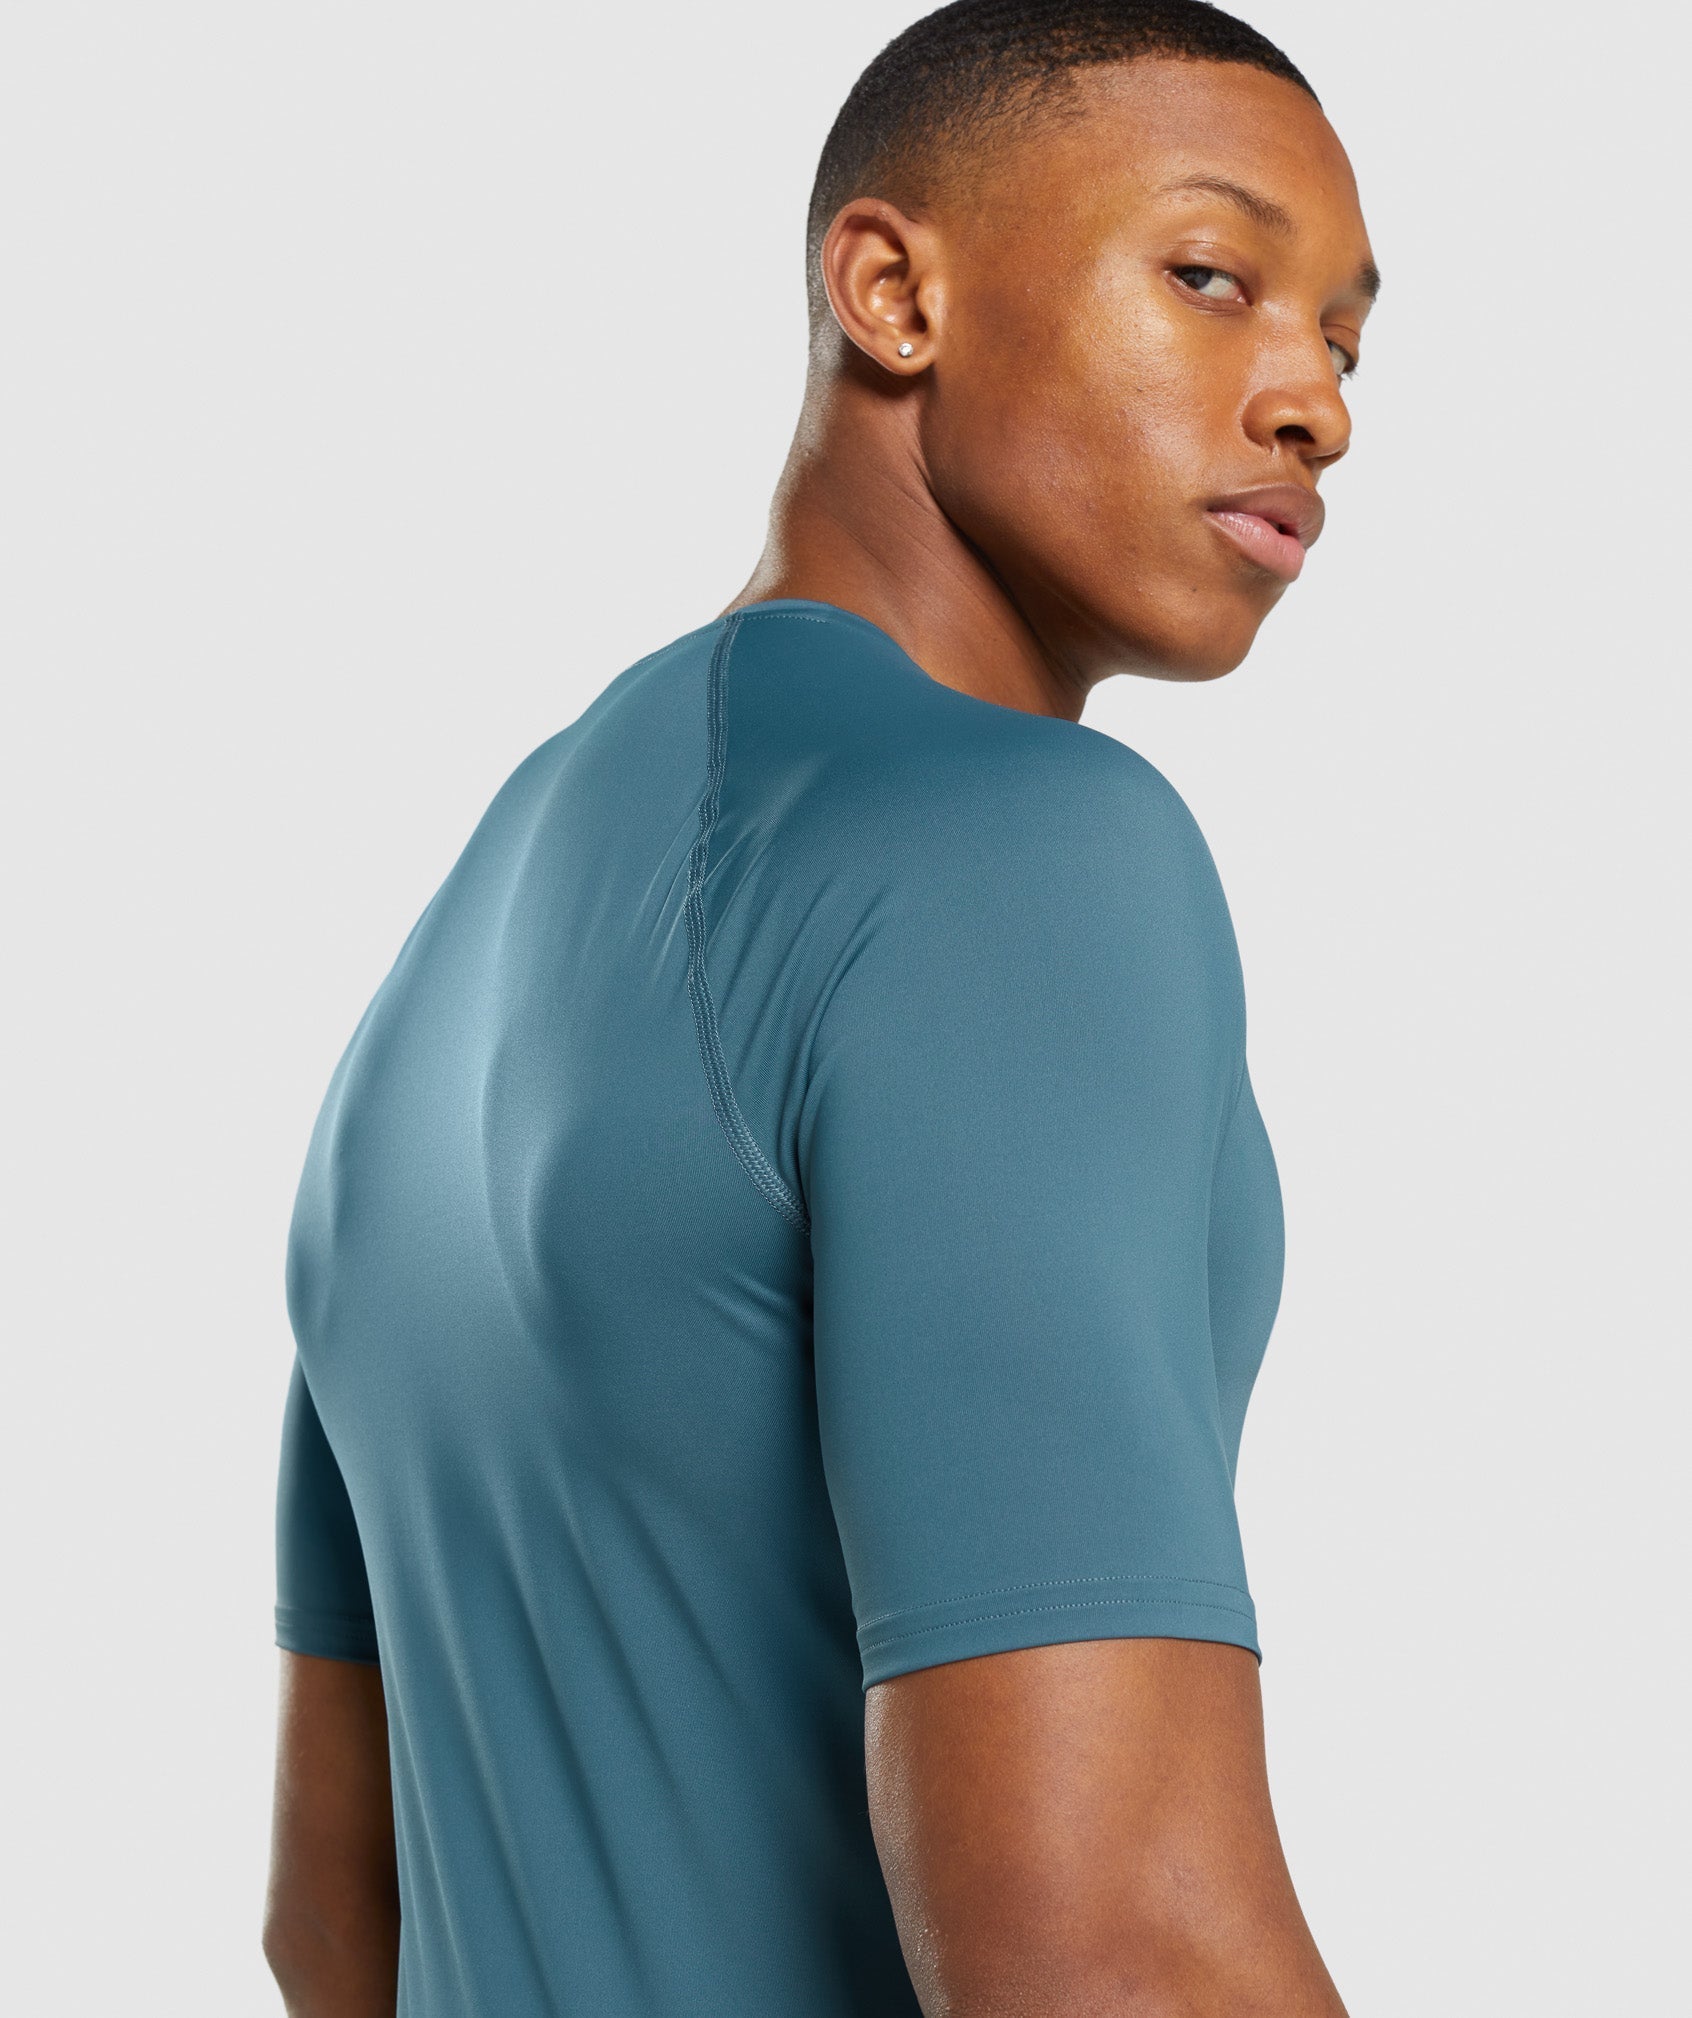 Gymshark Men's Baselayer Top Element Baselayer T-Shirt - New